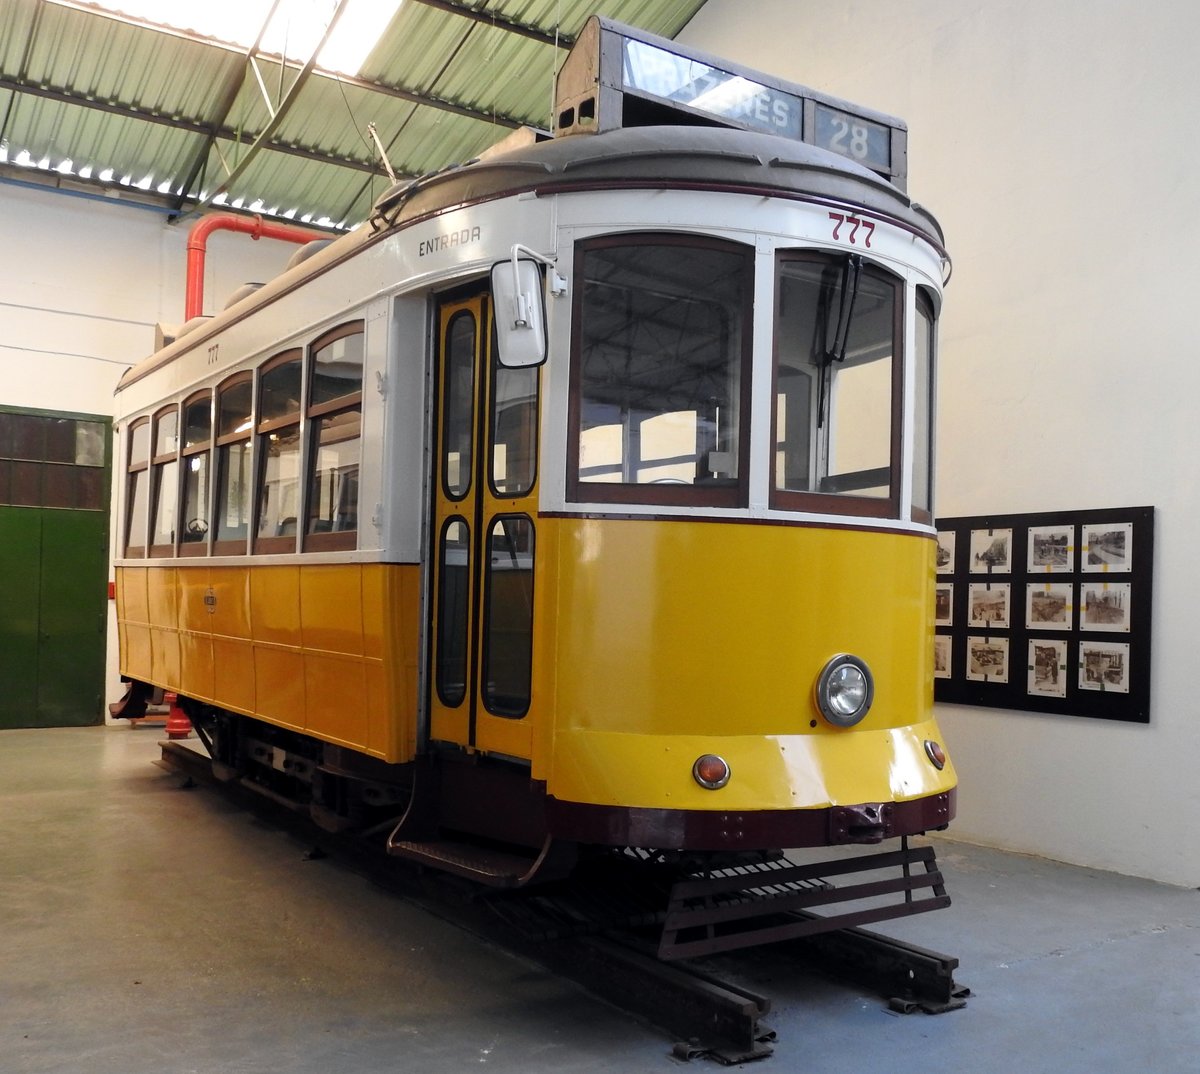 Electrico Nr.777 von CCFL Baujahr 1931 im Carris Straßenbahnmuseum Lissabon am 03.04.2017.